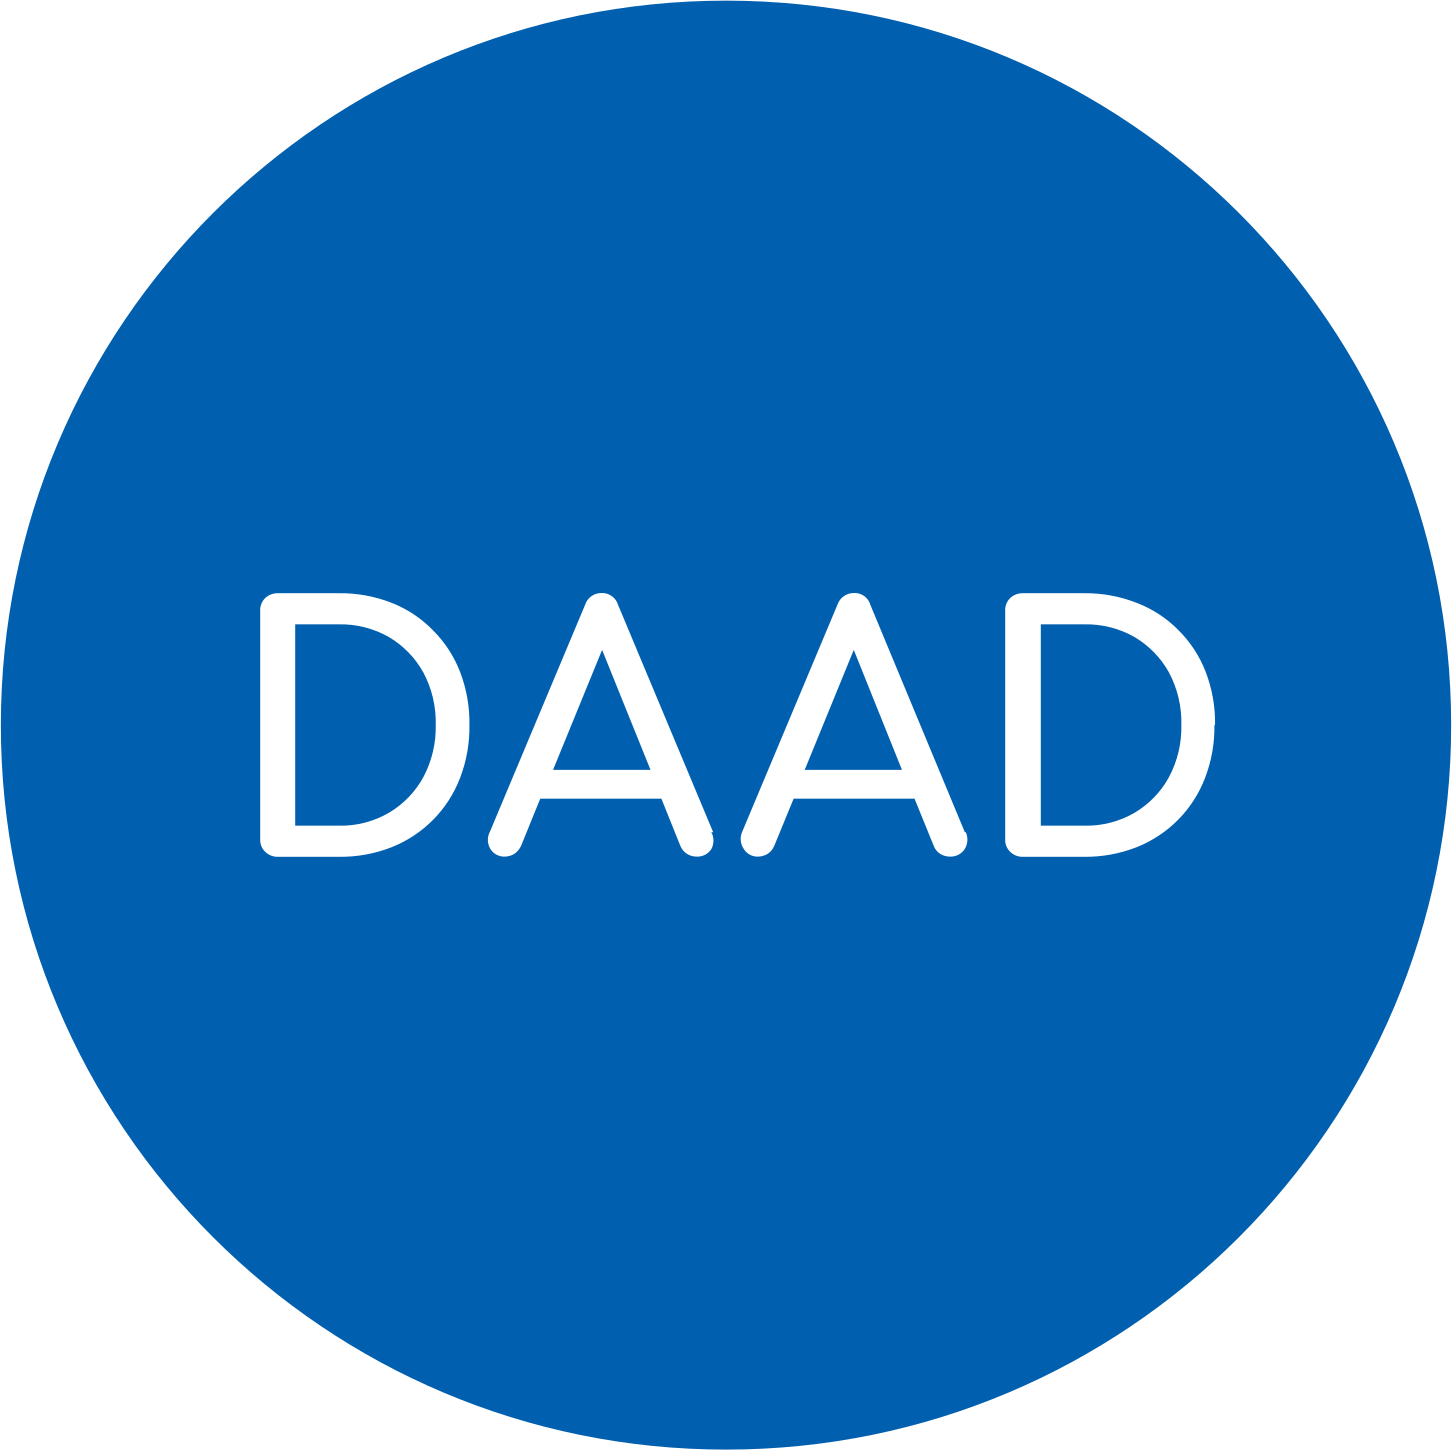 DAAD - Deutscher Akademischer Austauschdienst - German Academic Exchange Service  - to homepage